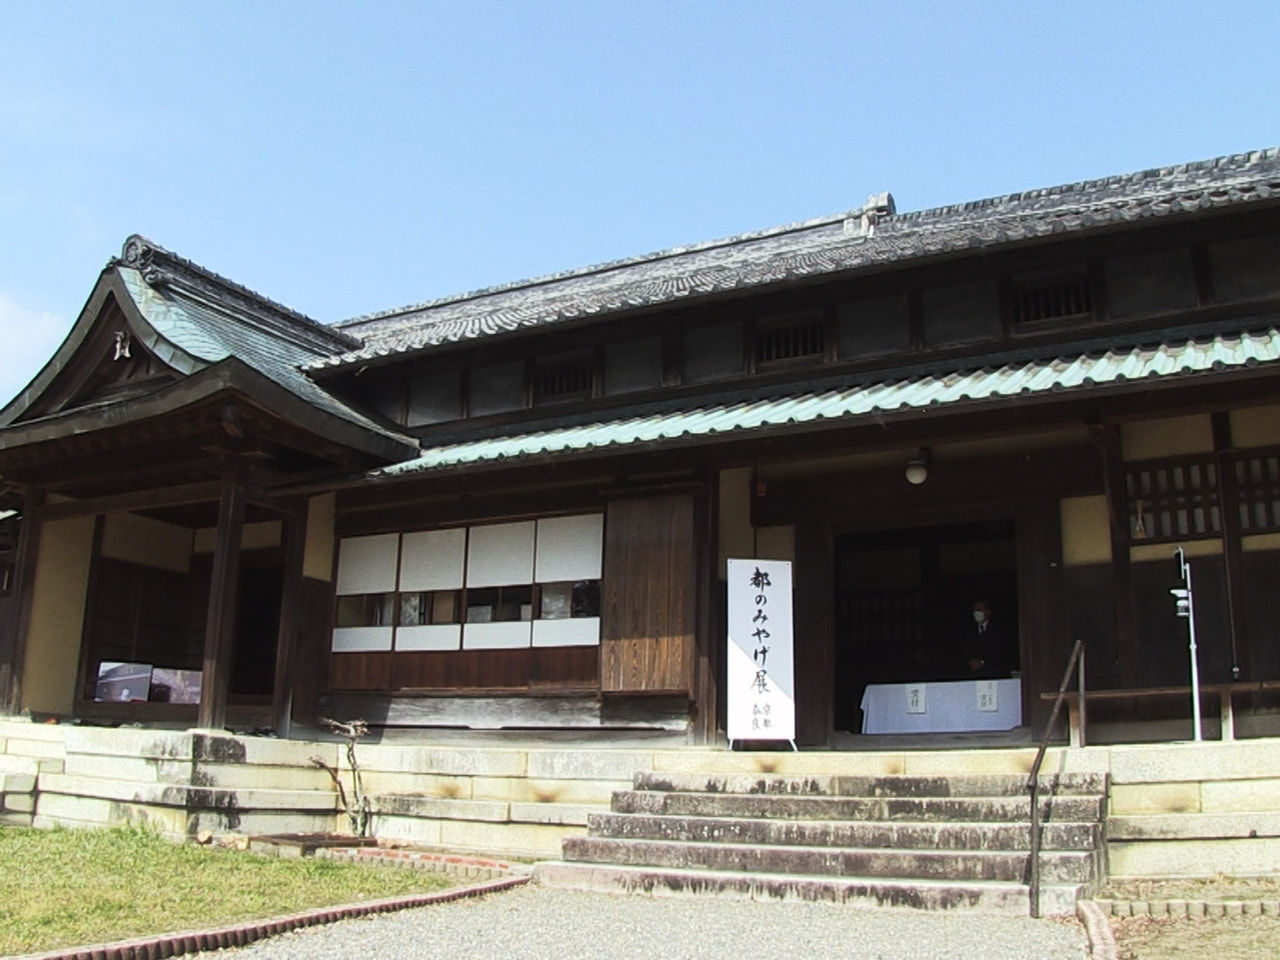 国の重要文化財に指定されている海津市の早川家住宅できょうから、茶道をテーマにした...